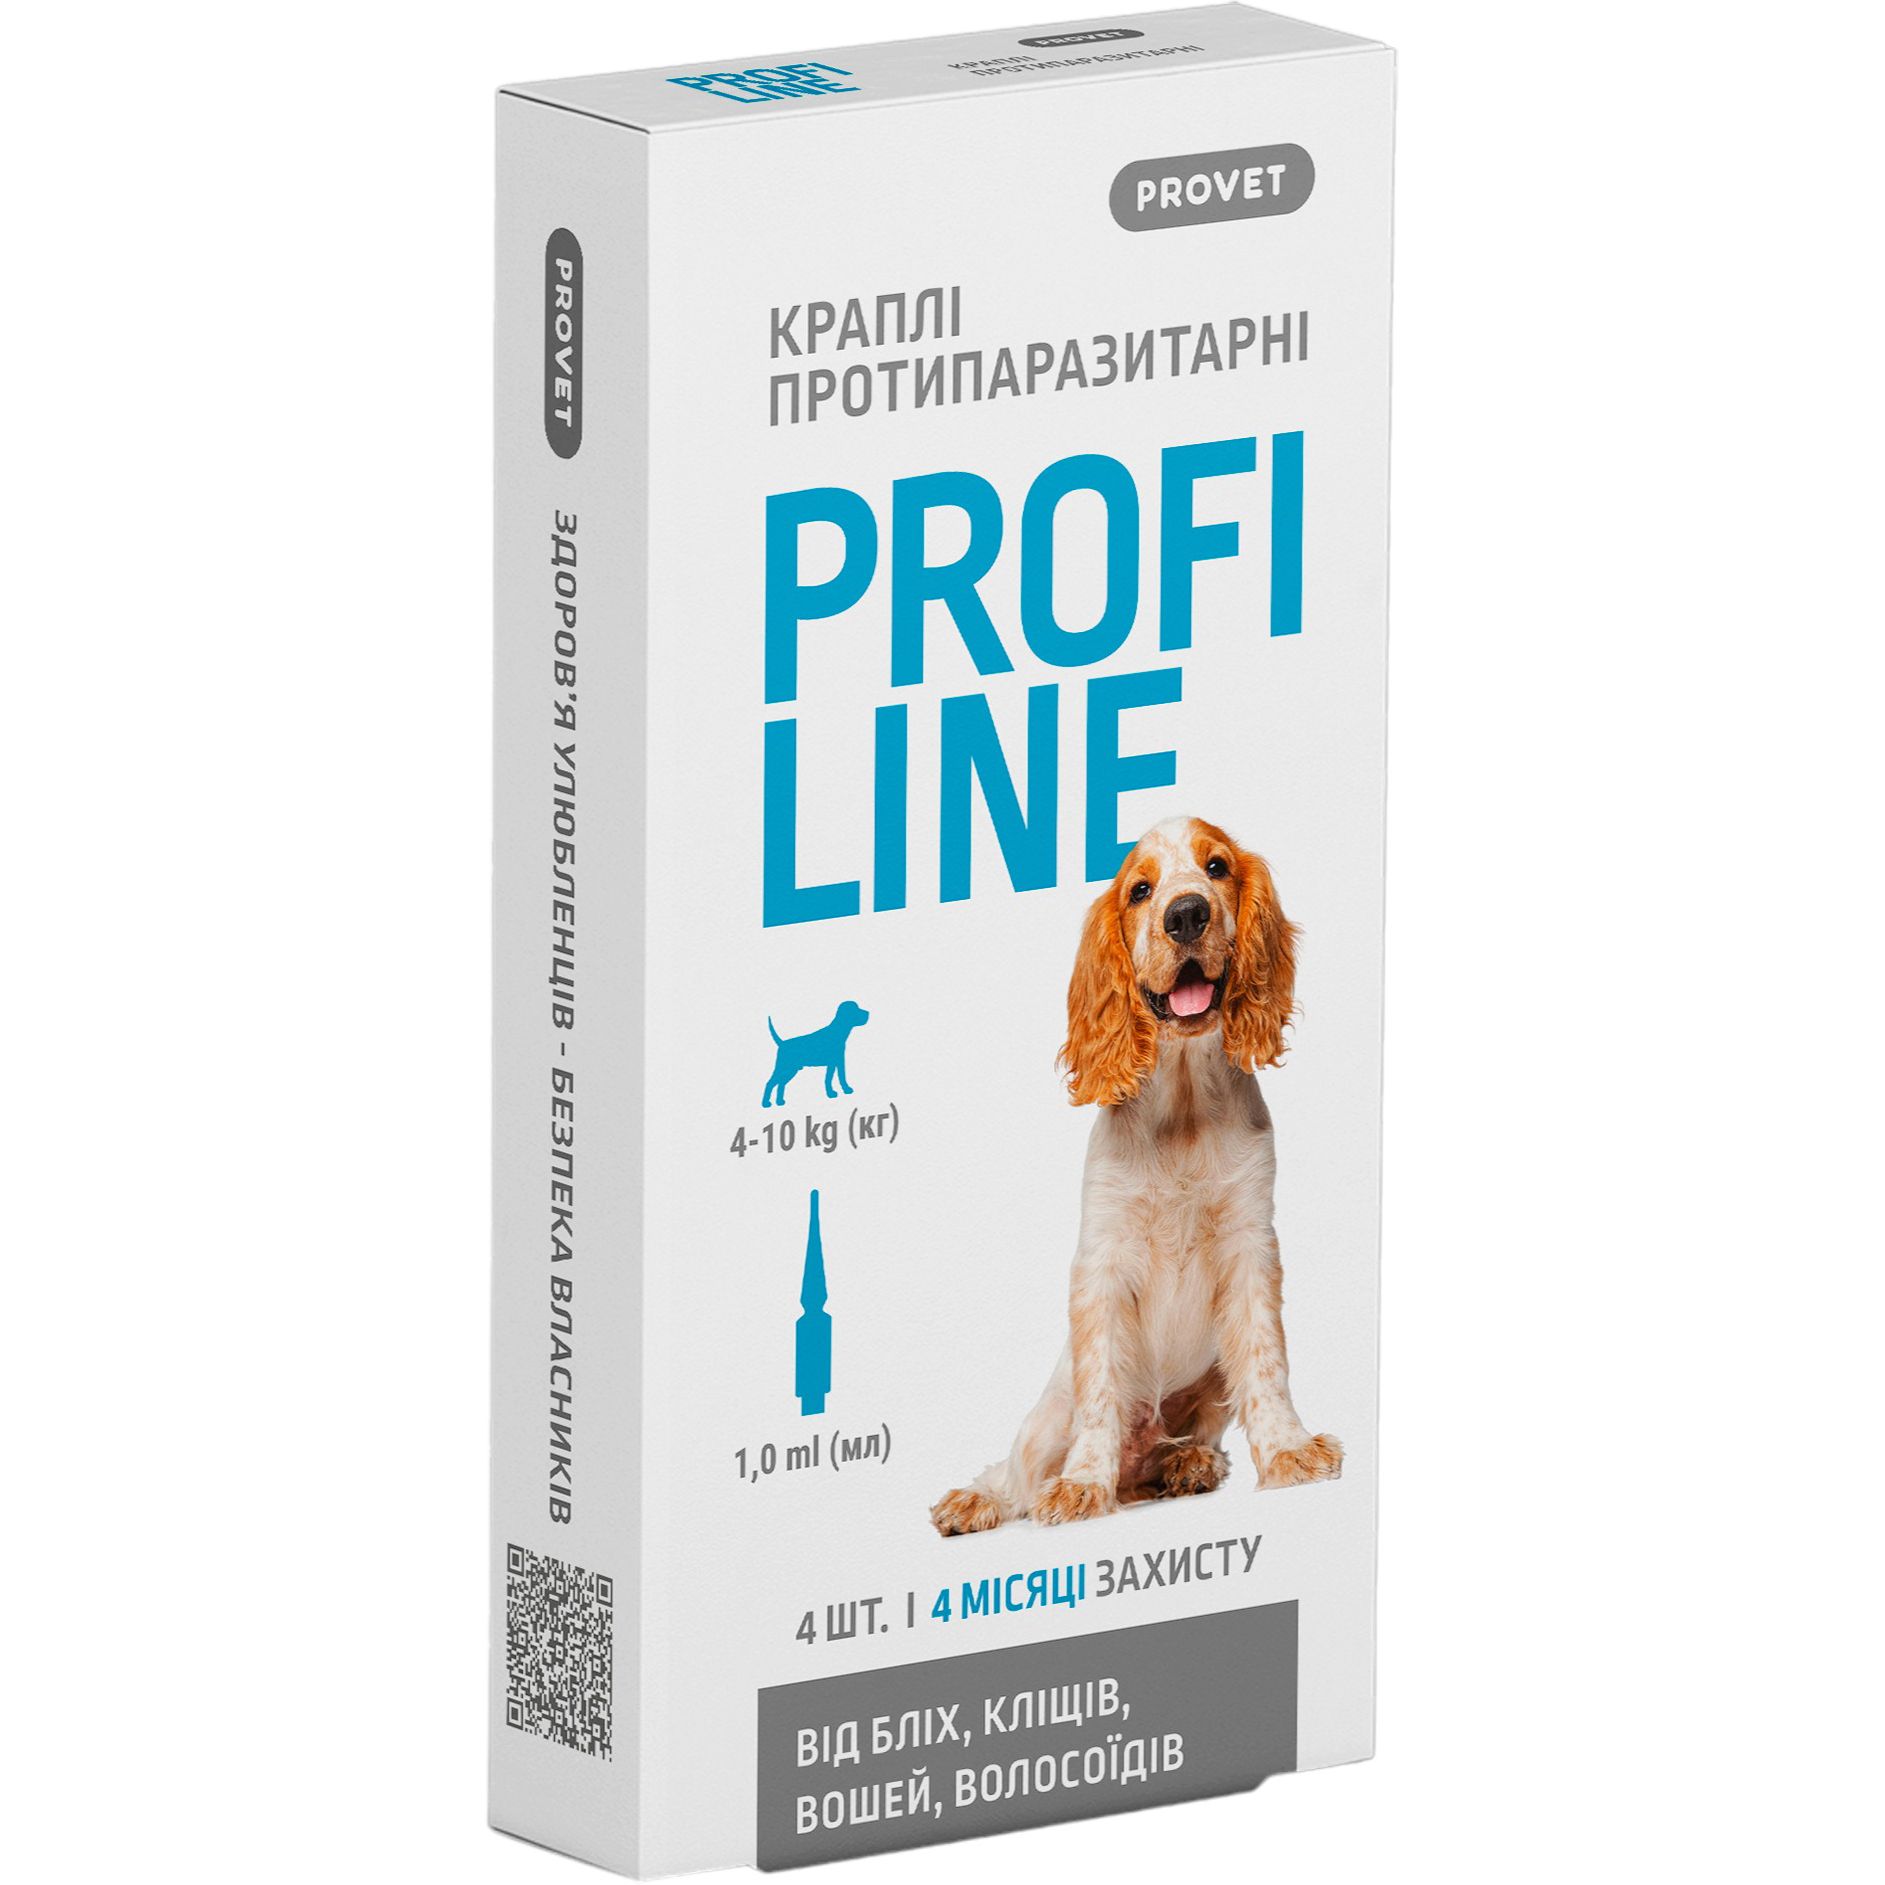 Краплі на холку для собак ProVET Profiline від зовнішніх паразитів, від 4 до 10 кг, 4 піпетки по 1 мл - фото 1